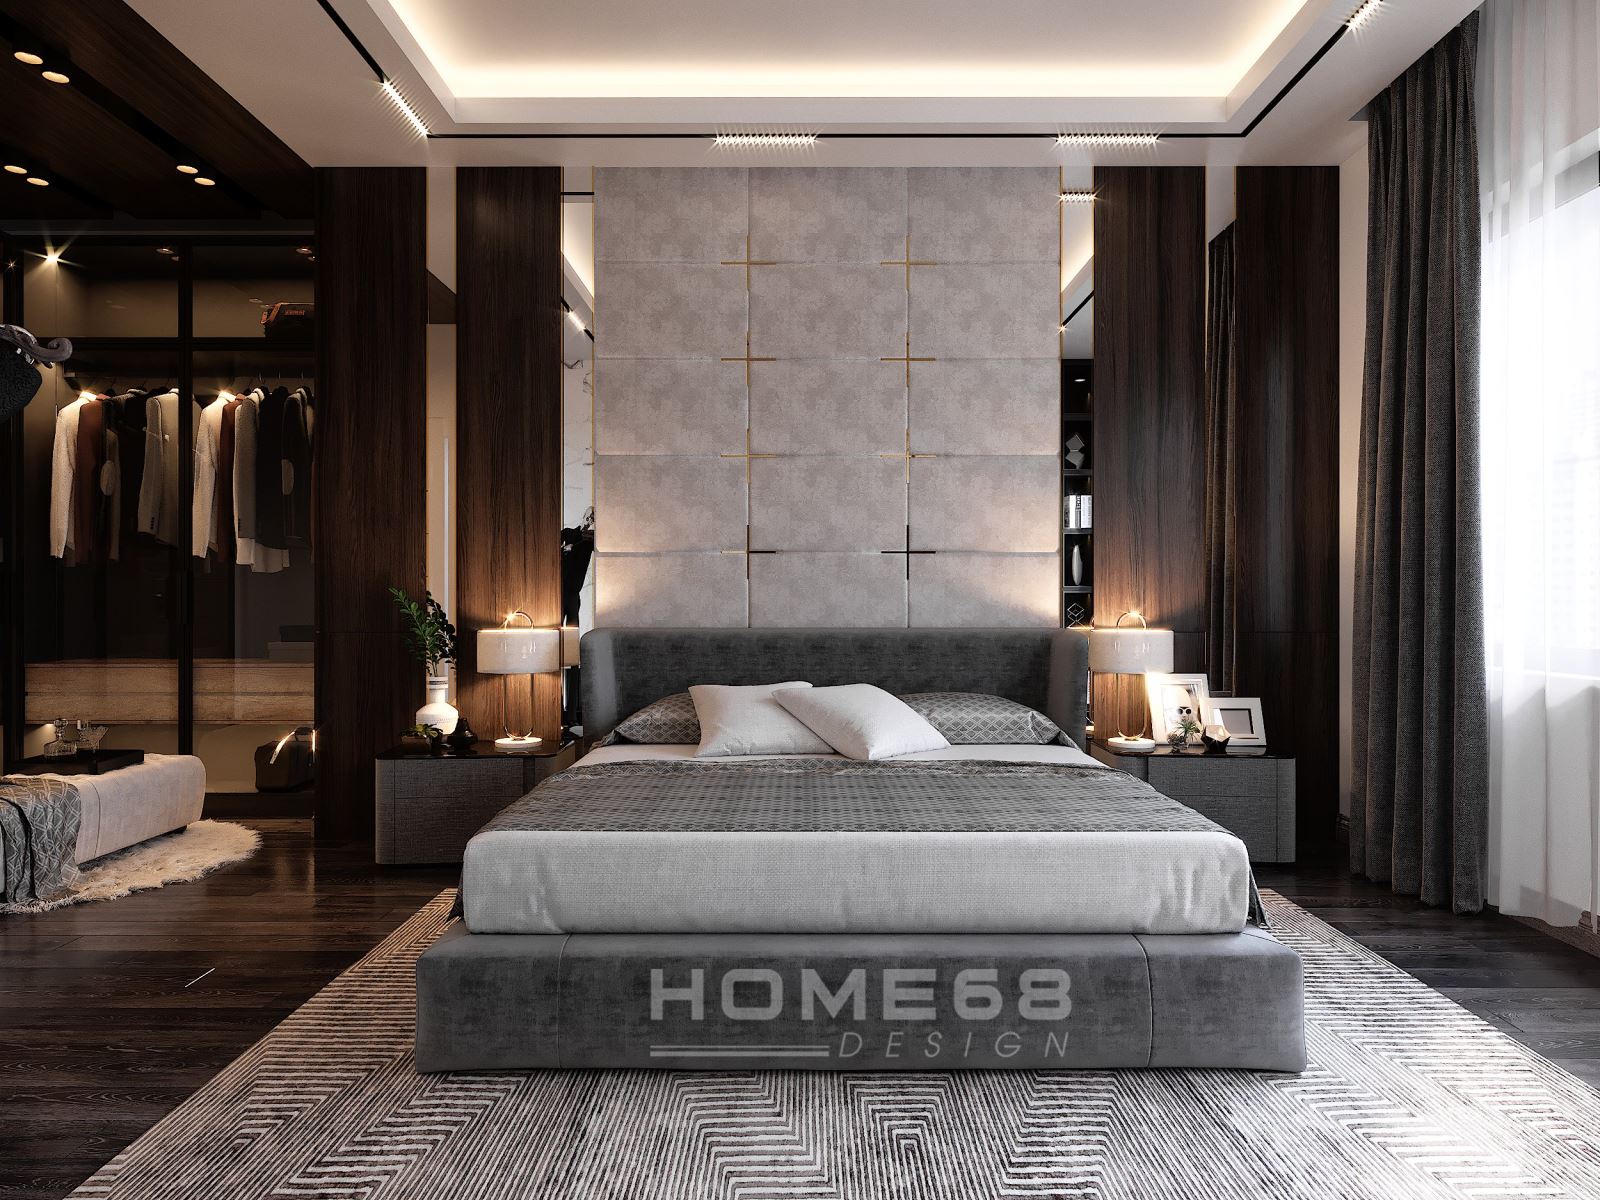 Thiết kế phòng ngủ minimalist hiện đại đang trở thành xu hướng trong không gian sống hiện nay. Với màu trắng và đồ nội thất đơn giản, kiểu dáng minimalist có thể tạo ra sự thoải mái và tĩnh lặng không thể tả được. Hãy cho phép tinh thần của bạn được giảm bớt bằng cách tận hưởng khoảnh khắc thư giãn tại phòng ngủ minimalist vô cùng hiện đại.